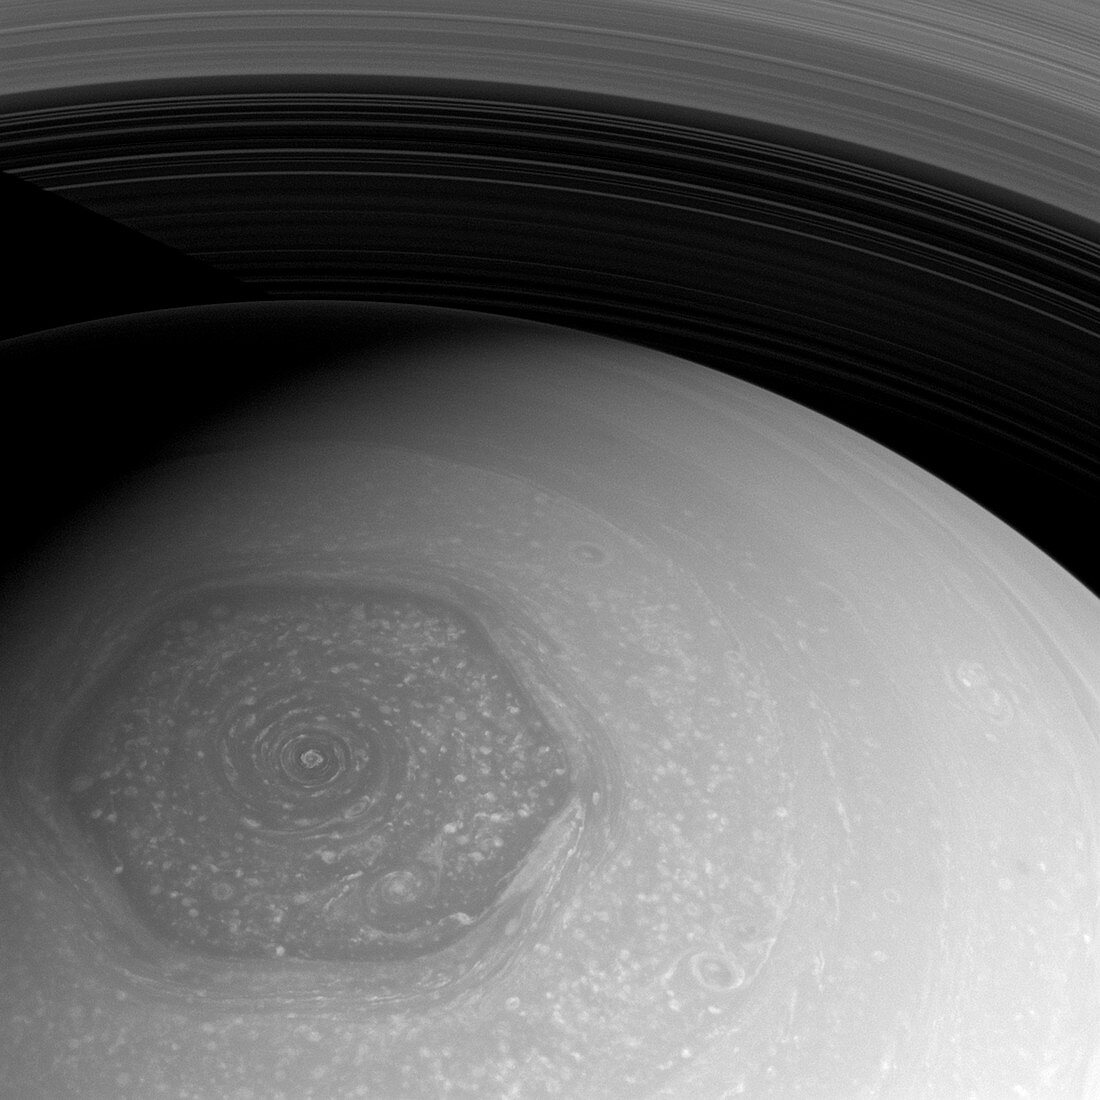 Saturn's hexagon,Cassini image